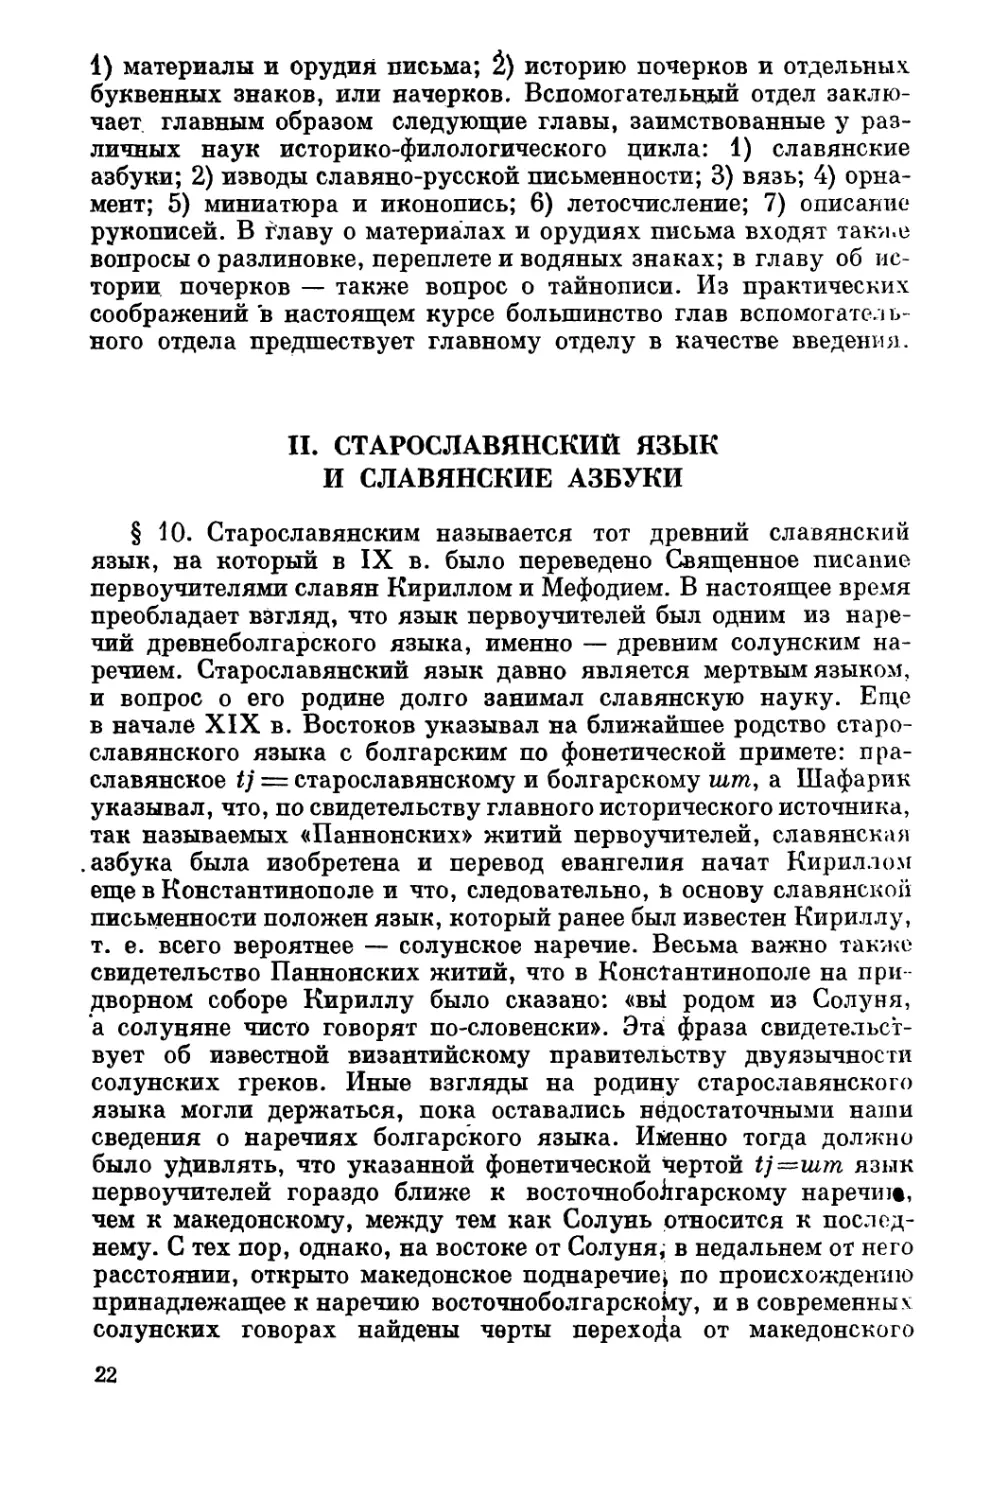 II. Старославянский язык и славянские азбуки